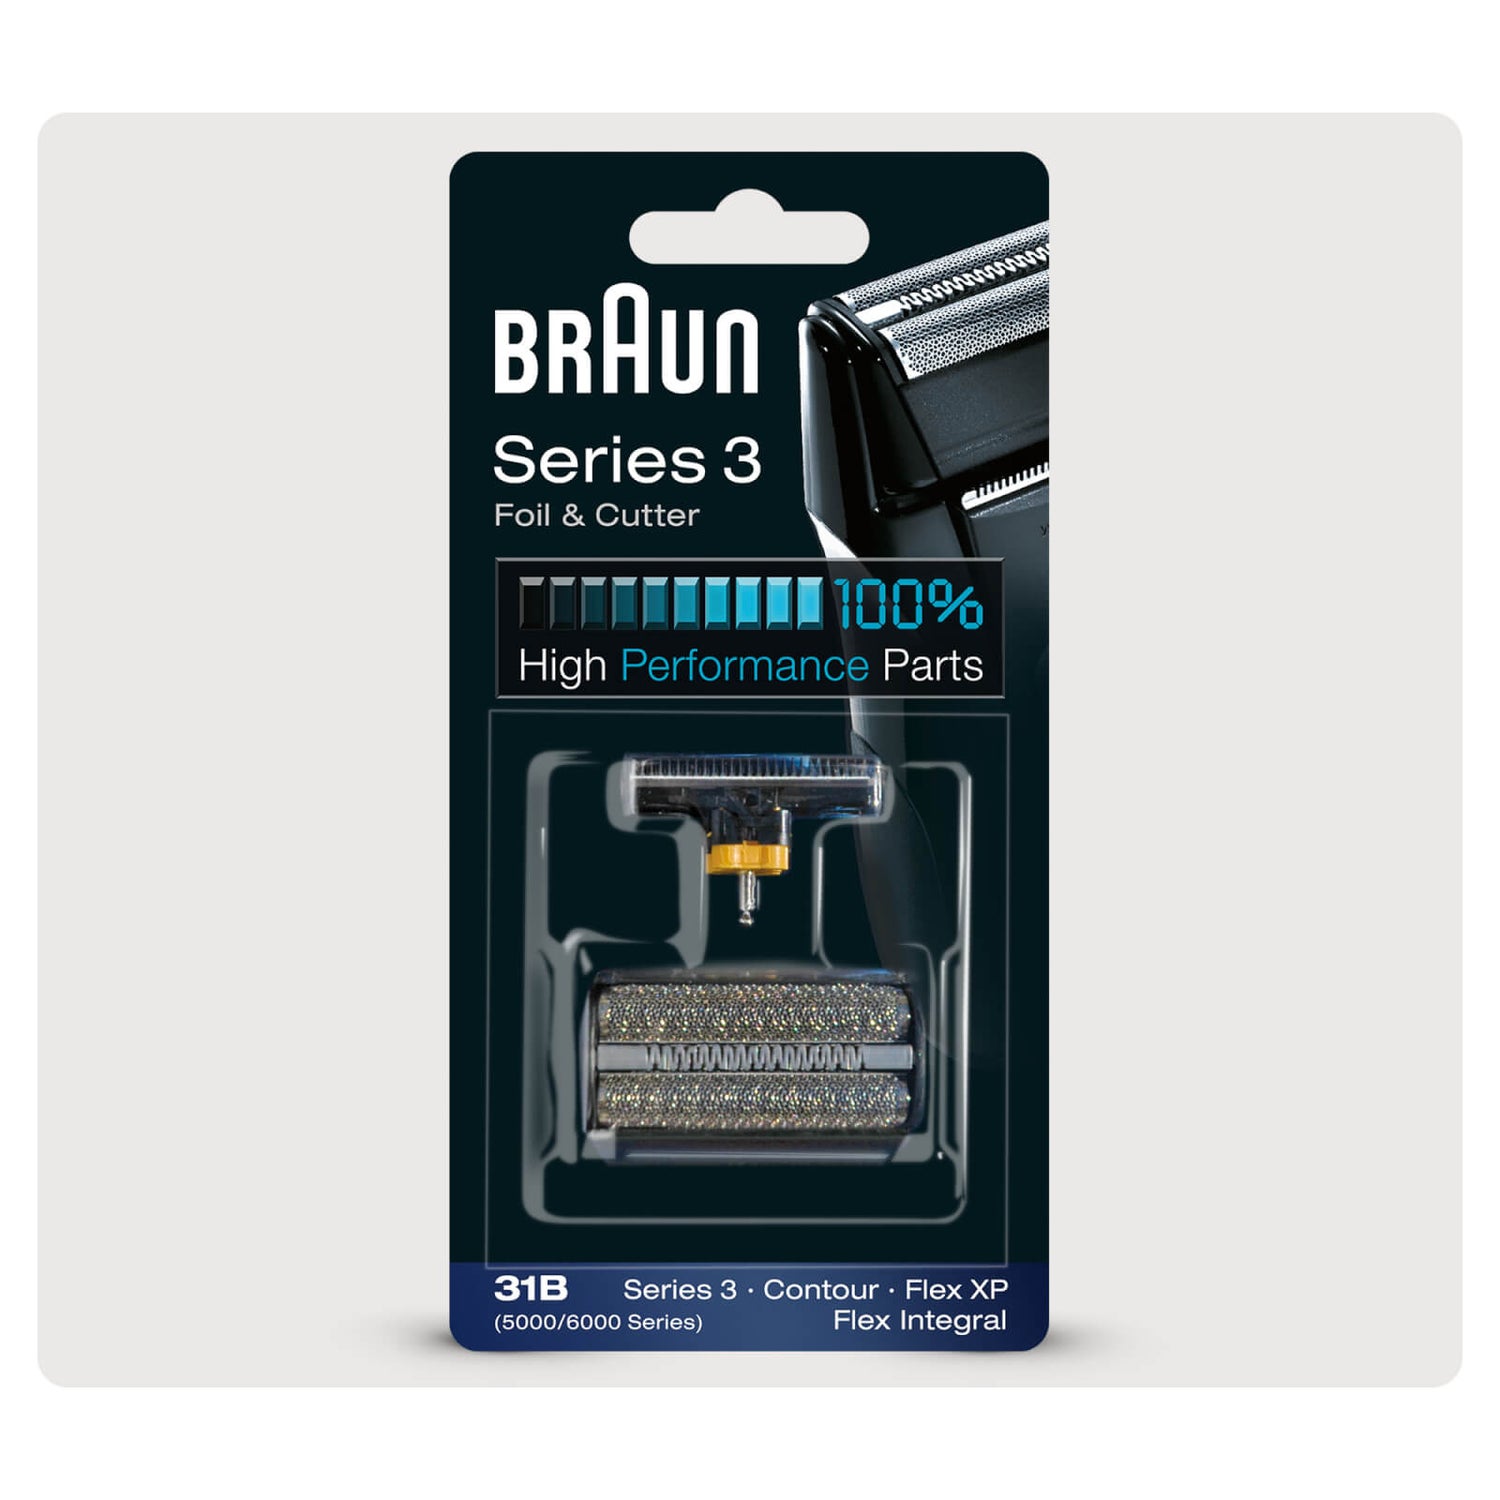 Braun Elektrorasierer Ersatzscherteil 31B, kompatibel mit Series 3 Rasierern, schwarz (UVP : 37,99 €)